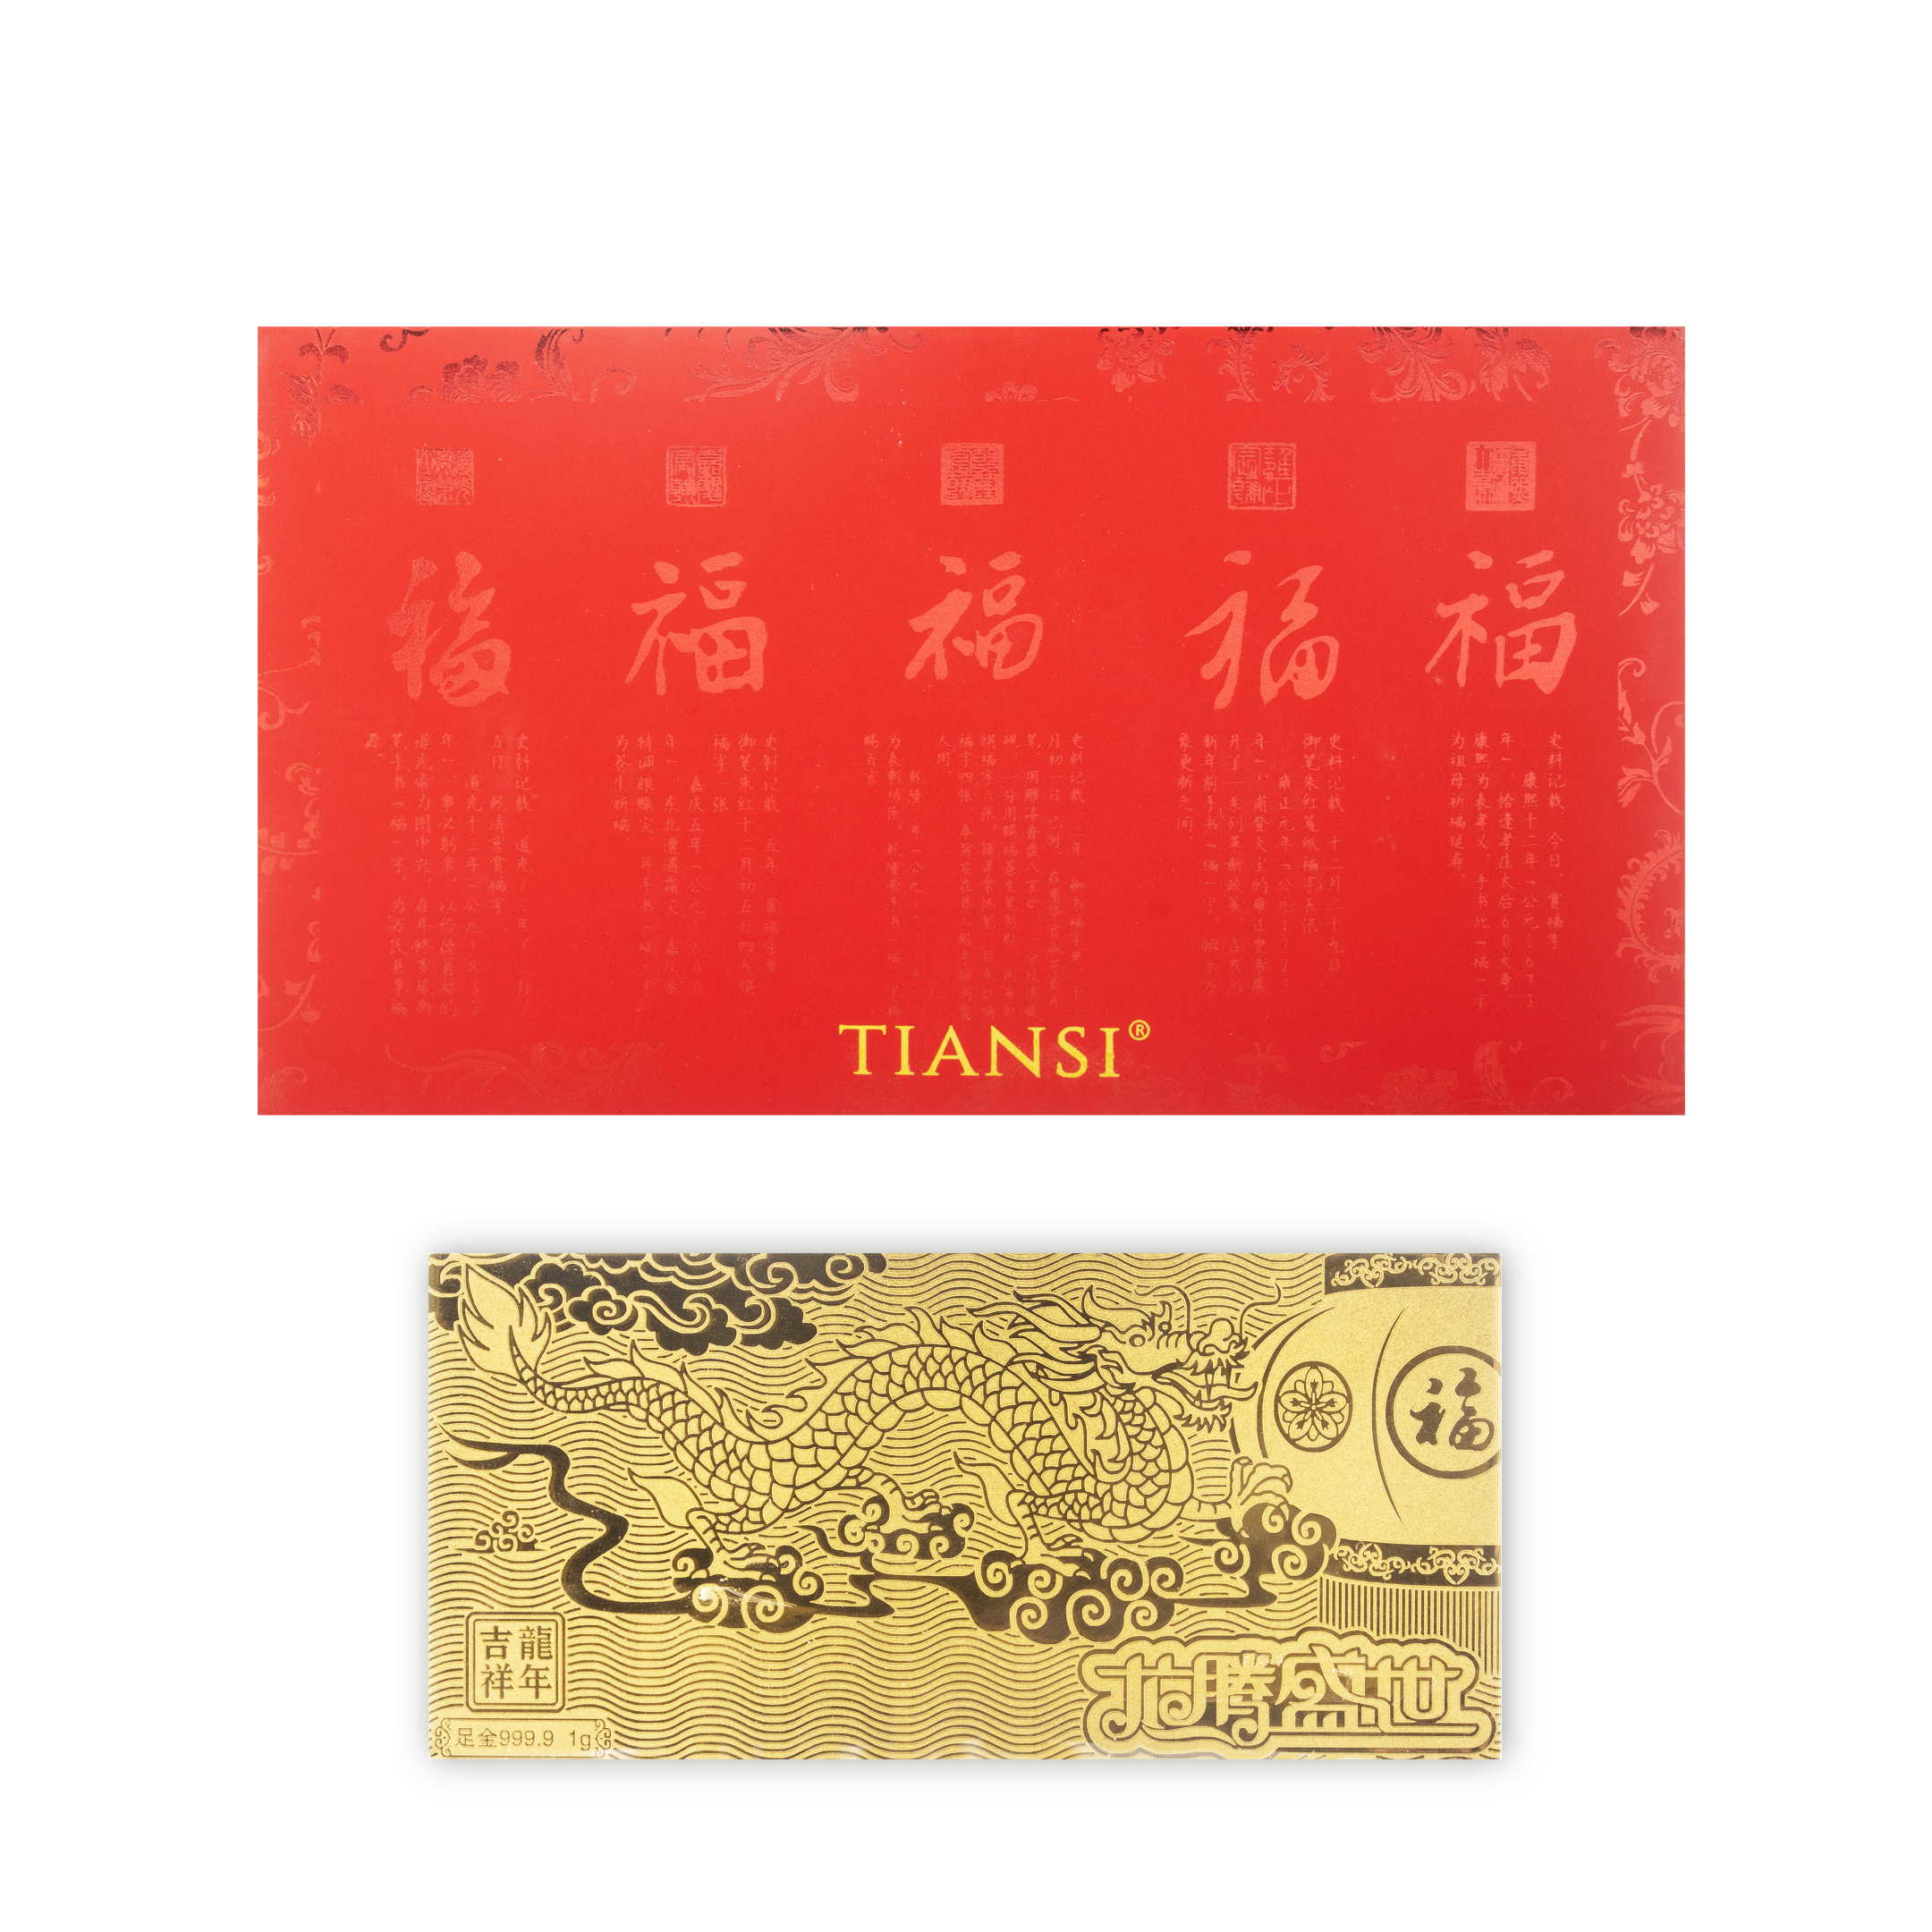 TIANSI 999 (24K) Gold Note Dragon